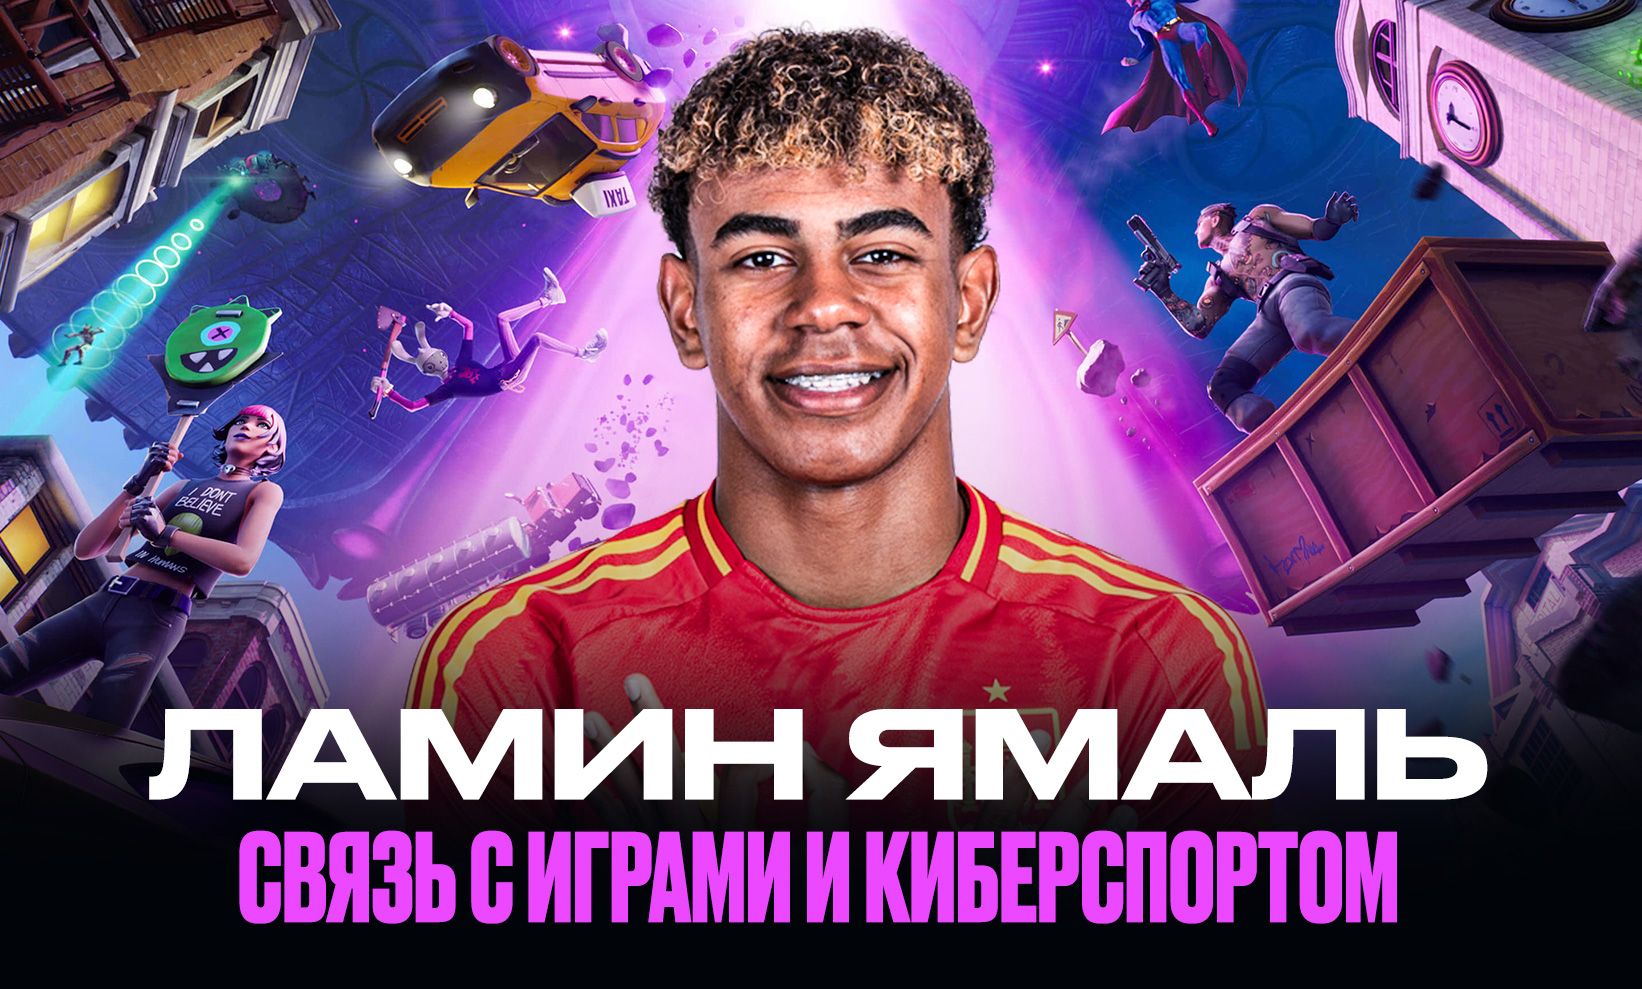 Ламин Ямаль – самый молодой победитель Евро: как он связан с киберспортом и компьютерными играми